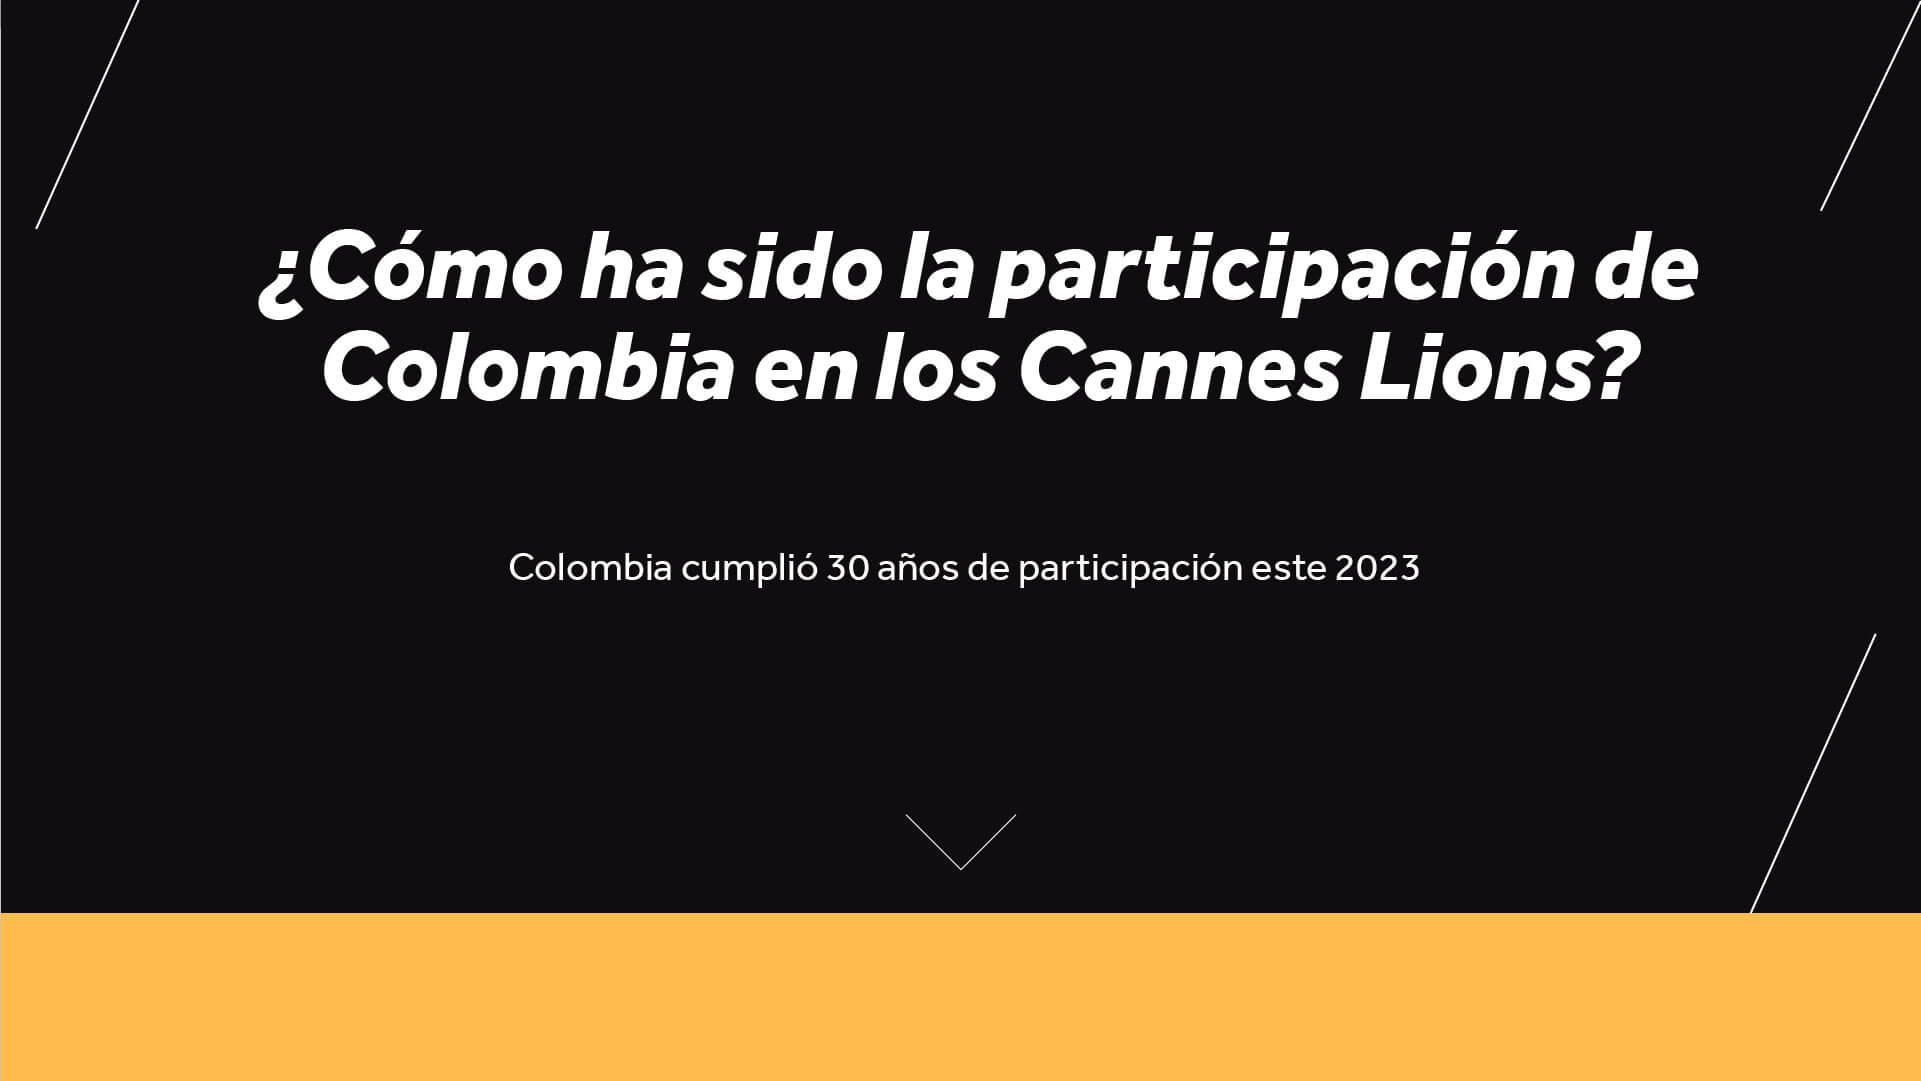 Colombia brilla en el festival de creatividad más importante del mundo